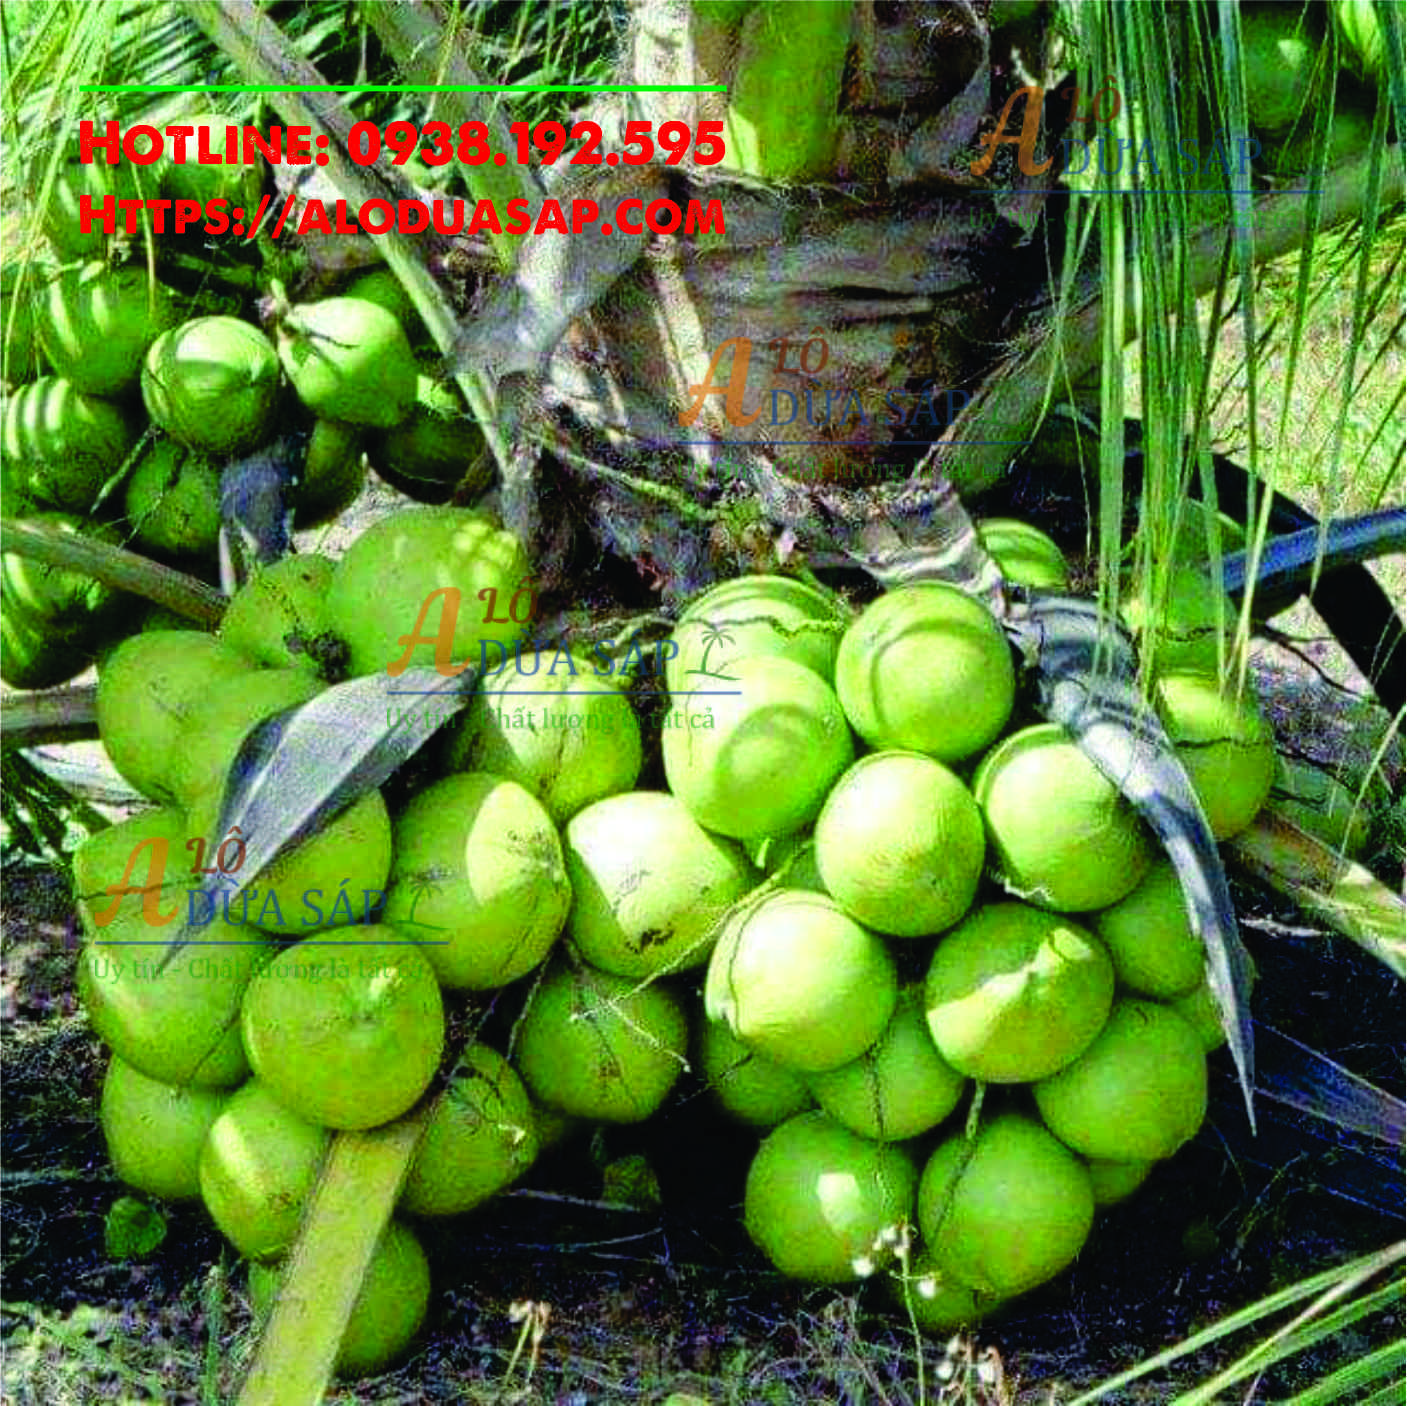 Chuyên cung cấp cây giống dừa dứa giá rẻ tại huyện Trà Cú Trà Vinh